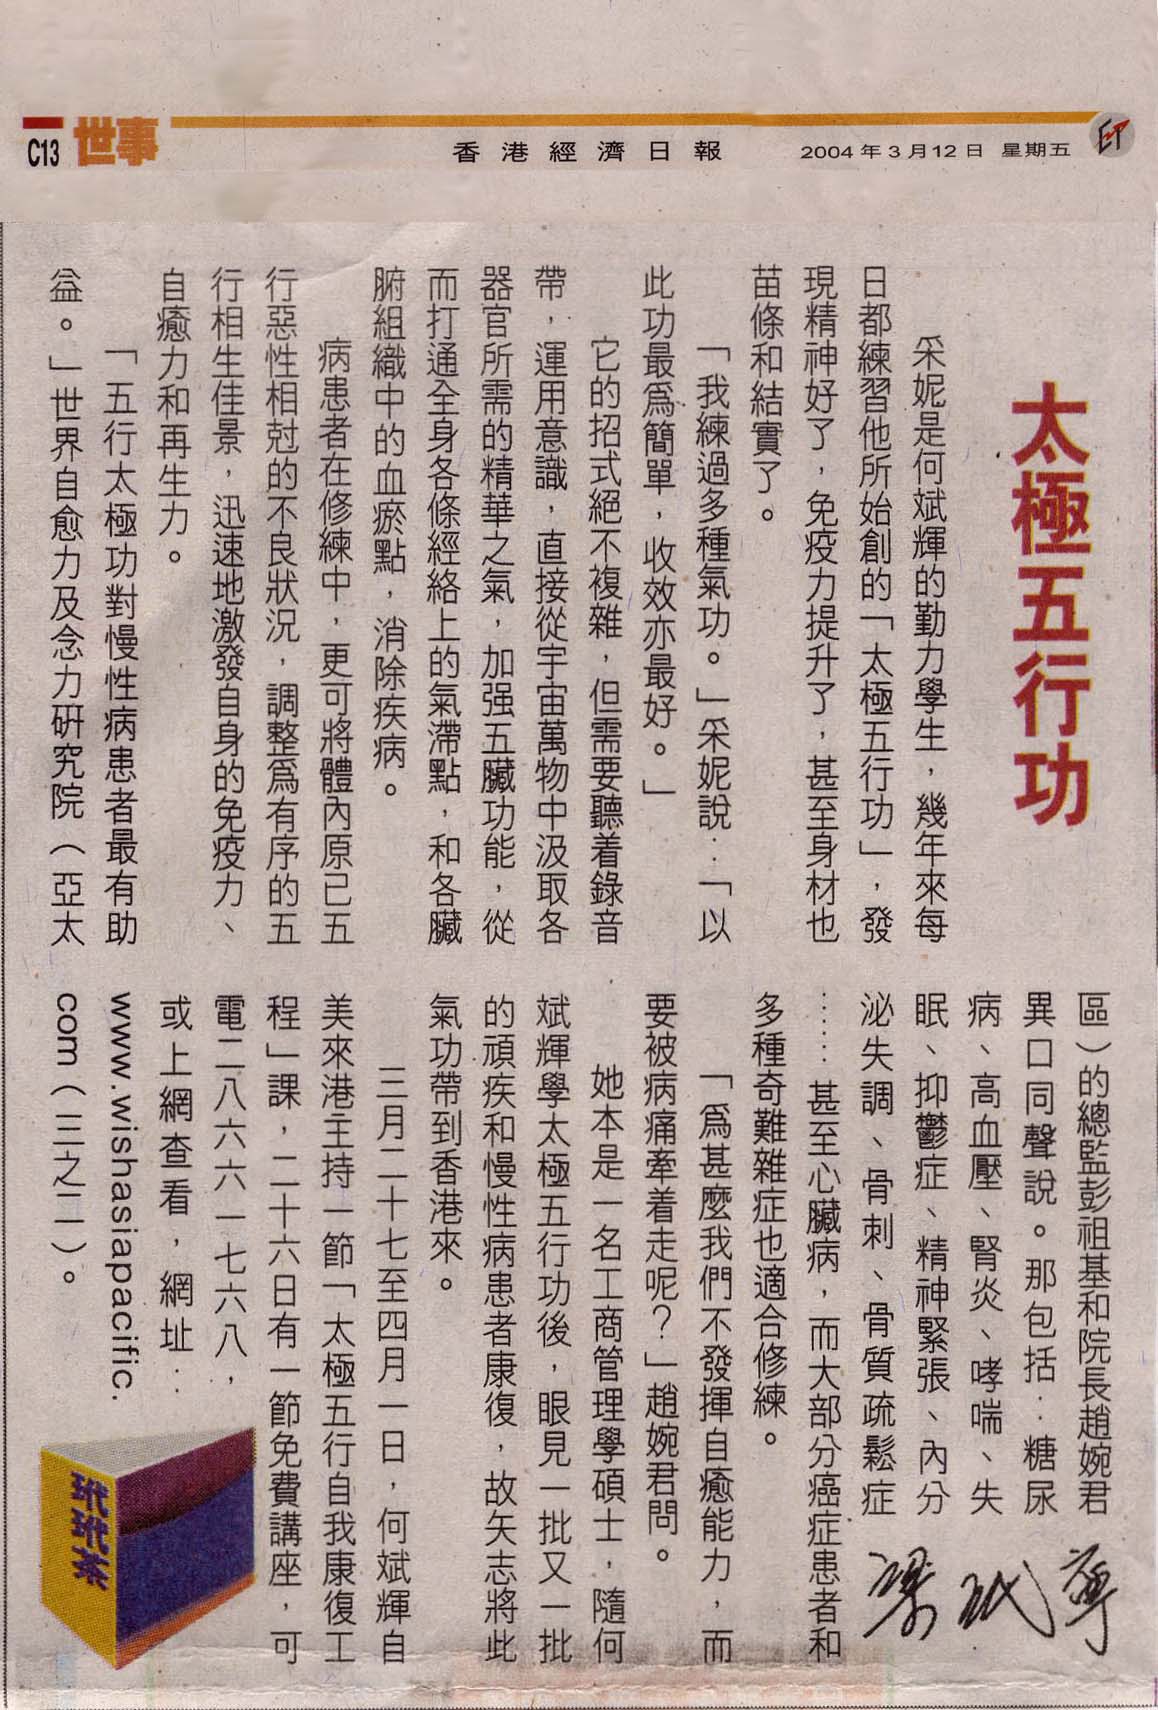 香港經濟日報︰2004年3月12日 (太極五行功)